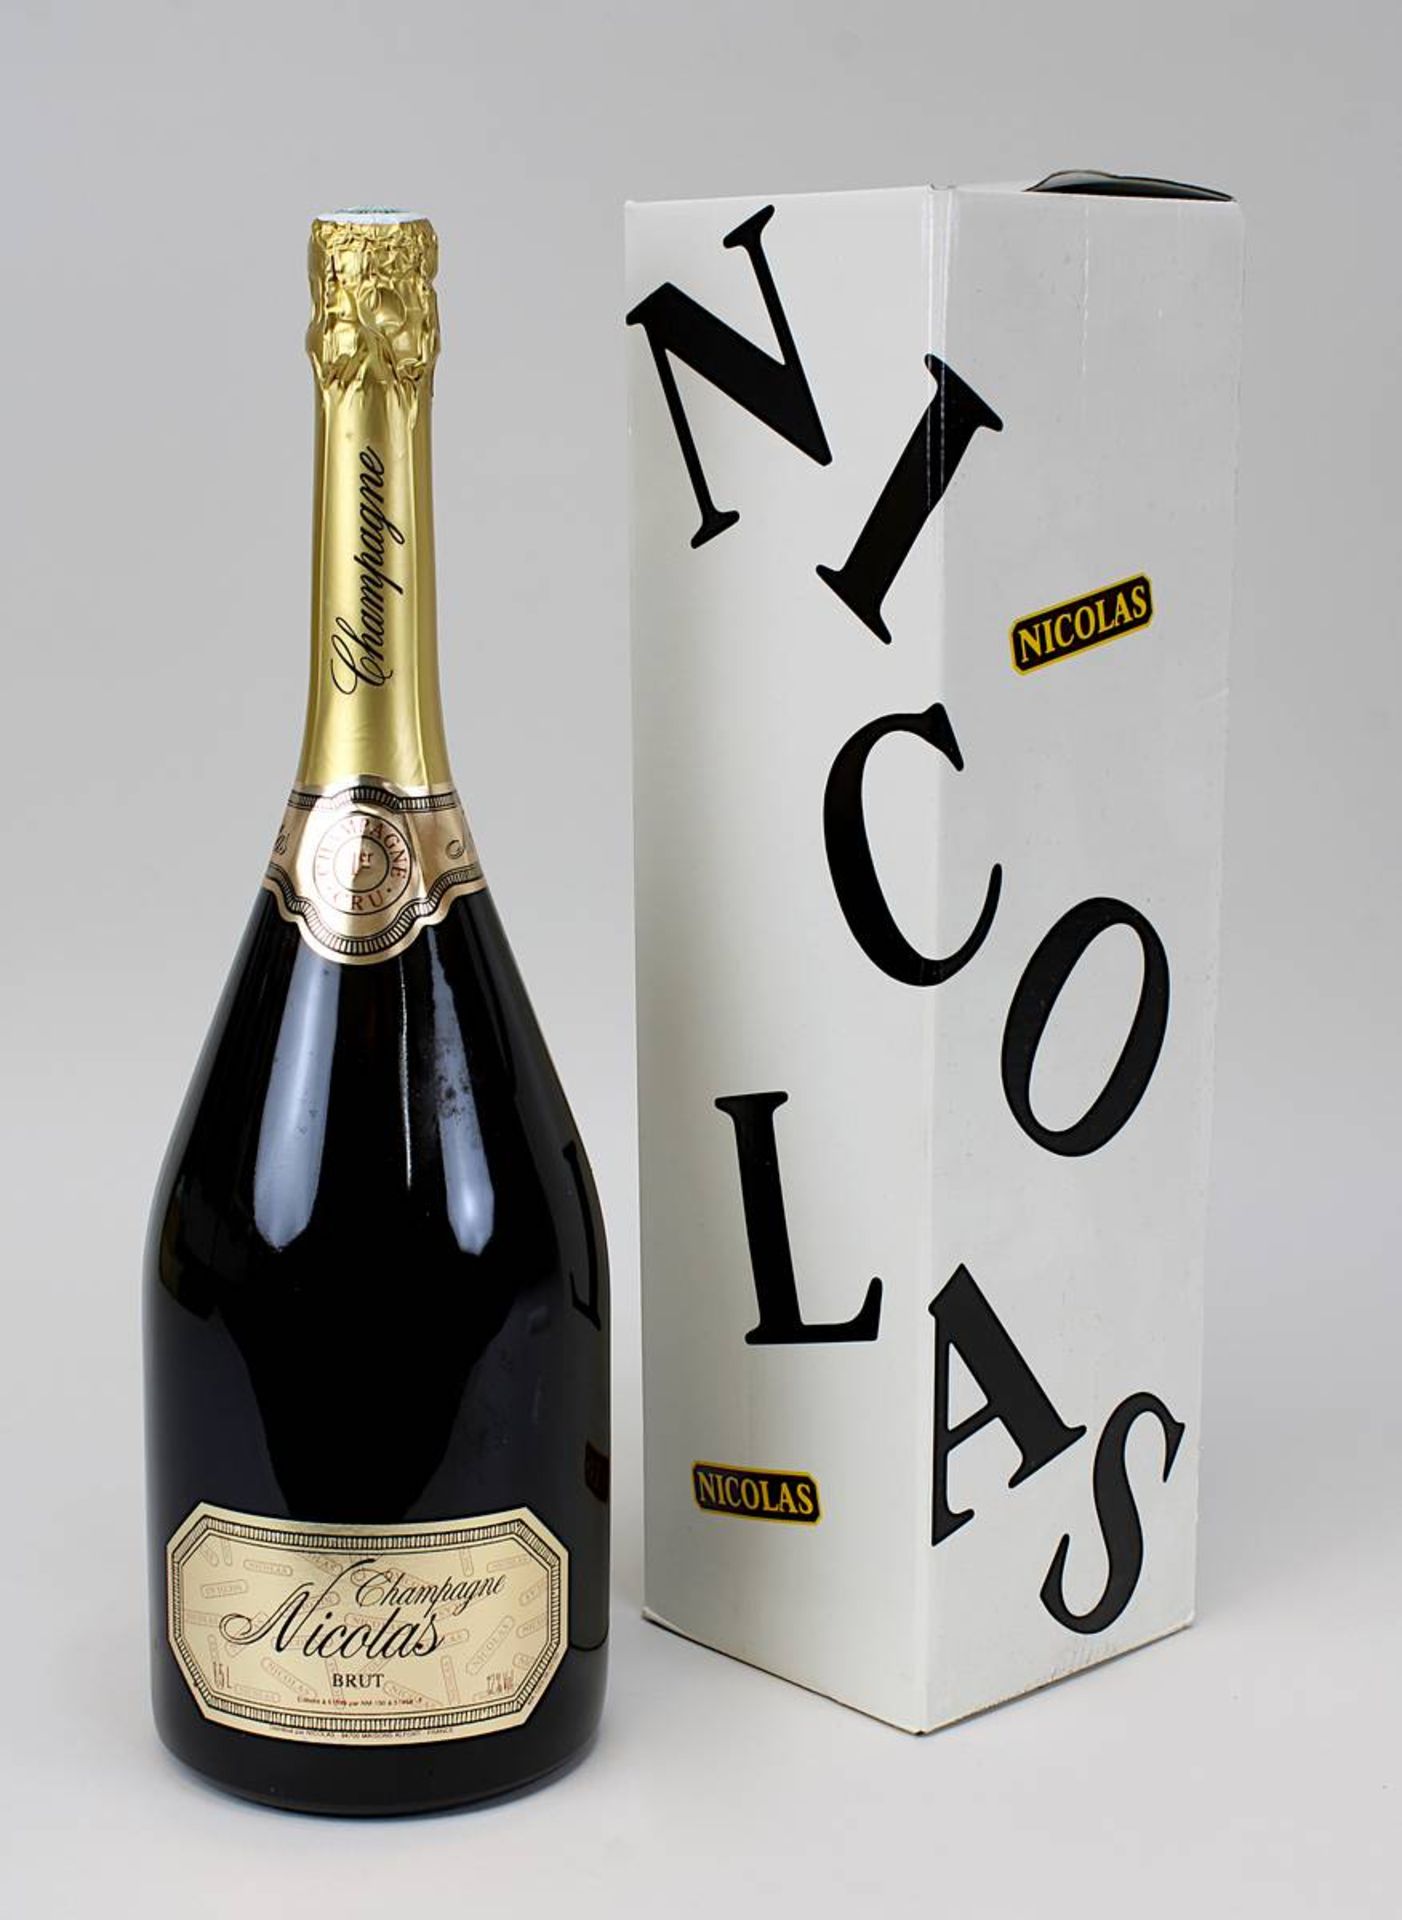 1 Magnum - Flasche Champagner, 1er Cru, Nicolas Brut, Maisons Alfort, sehr gute Füllhöhe, im org.